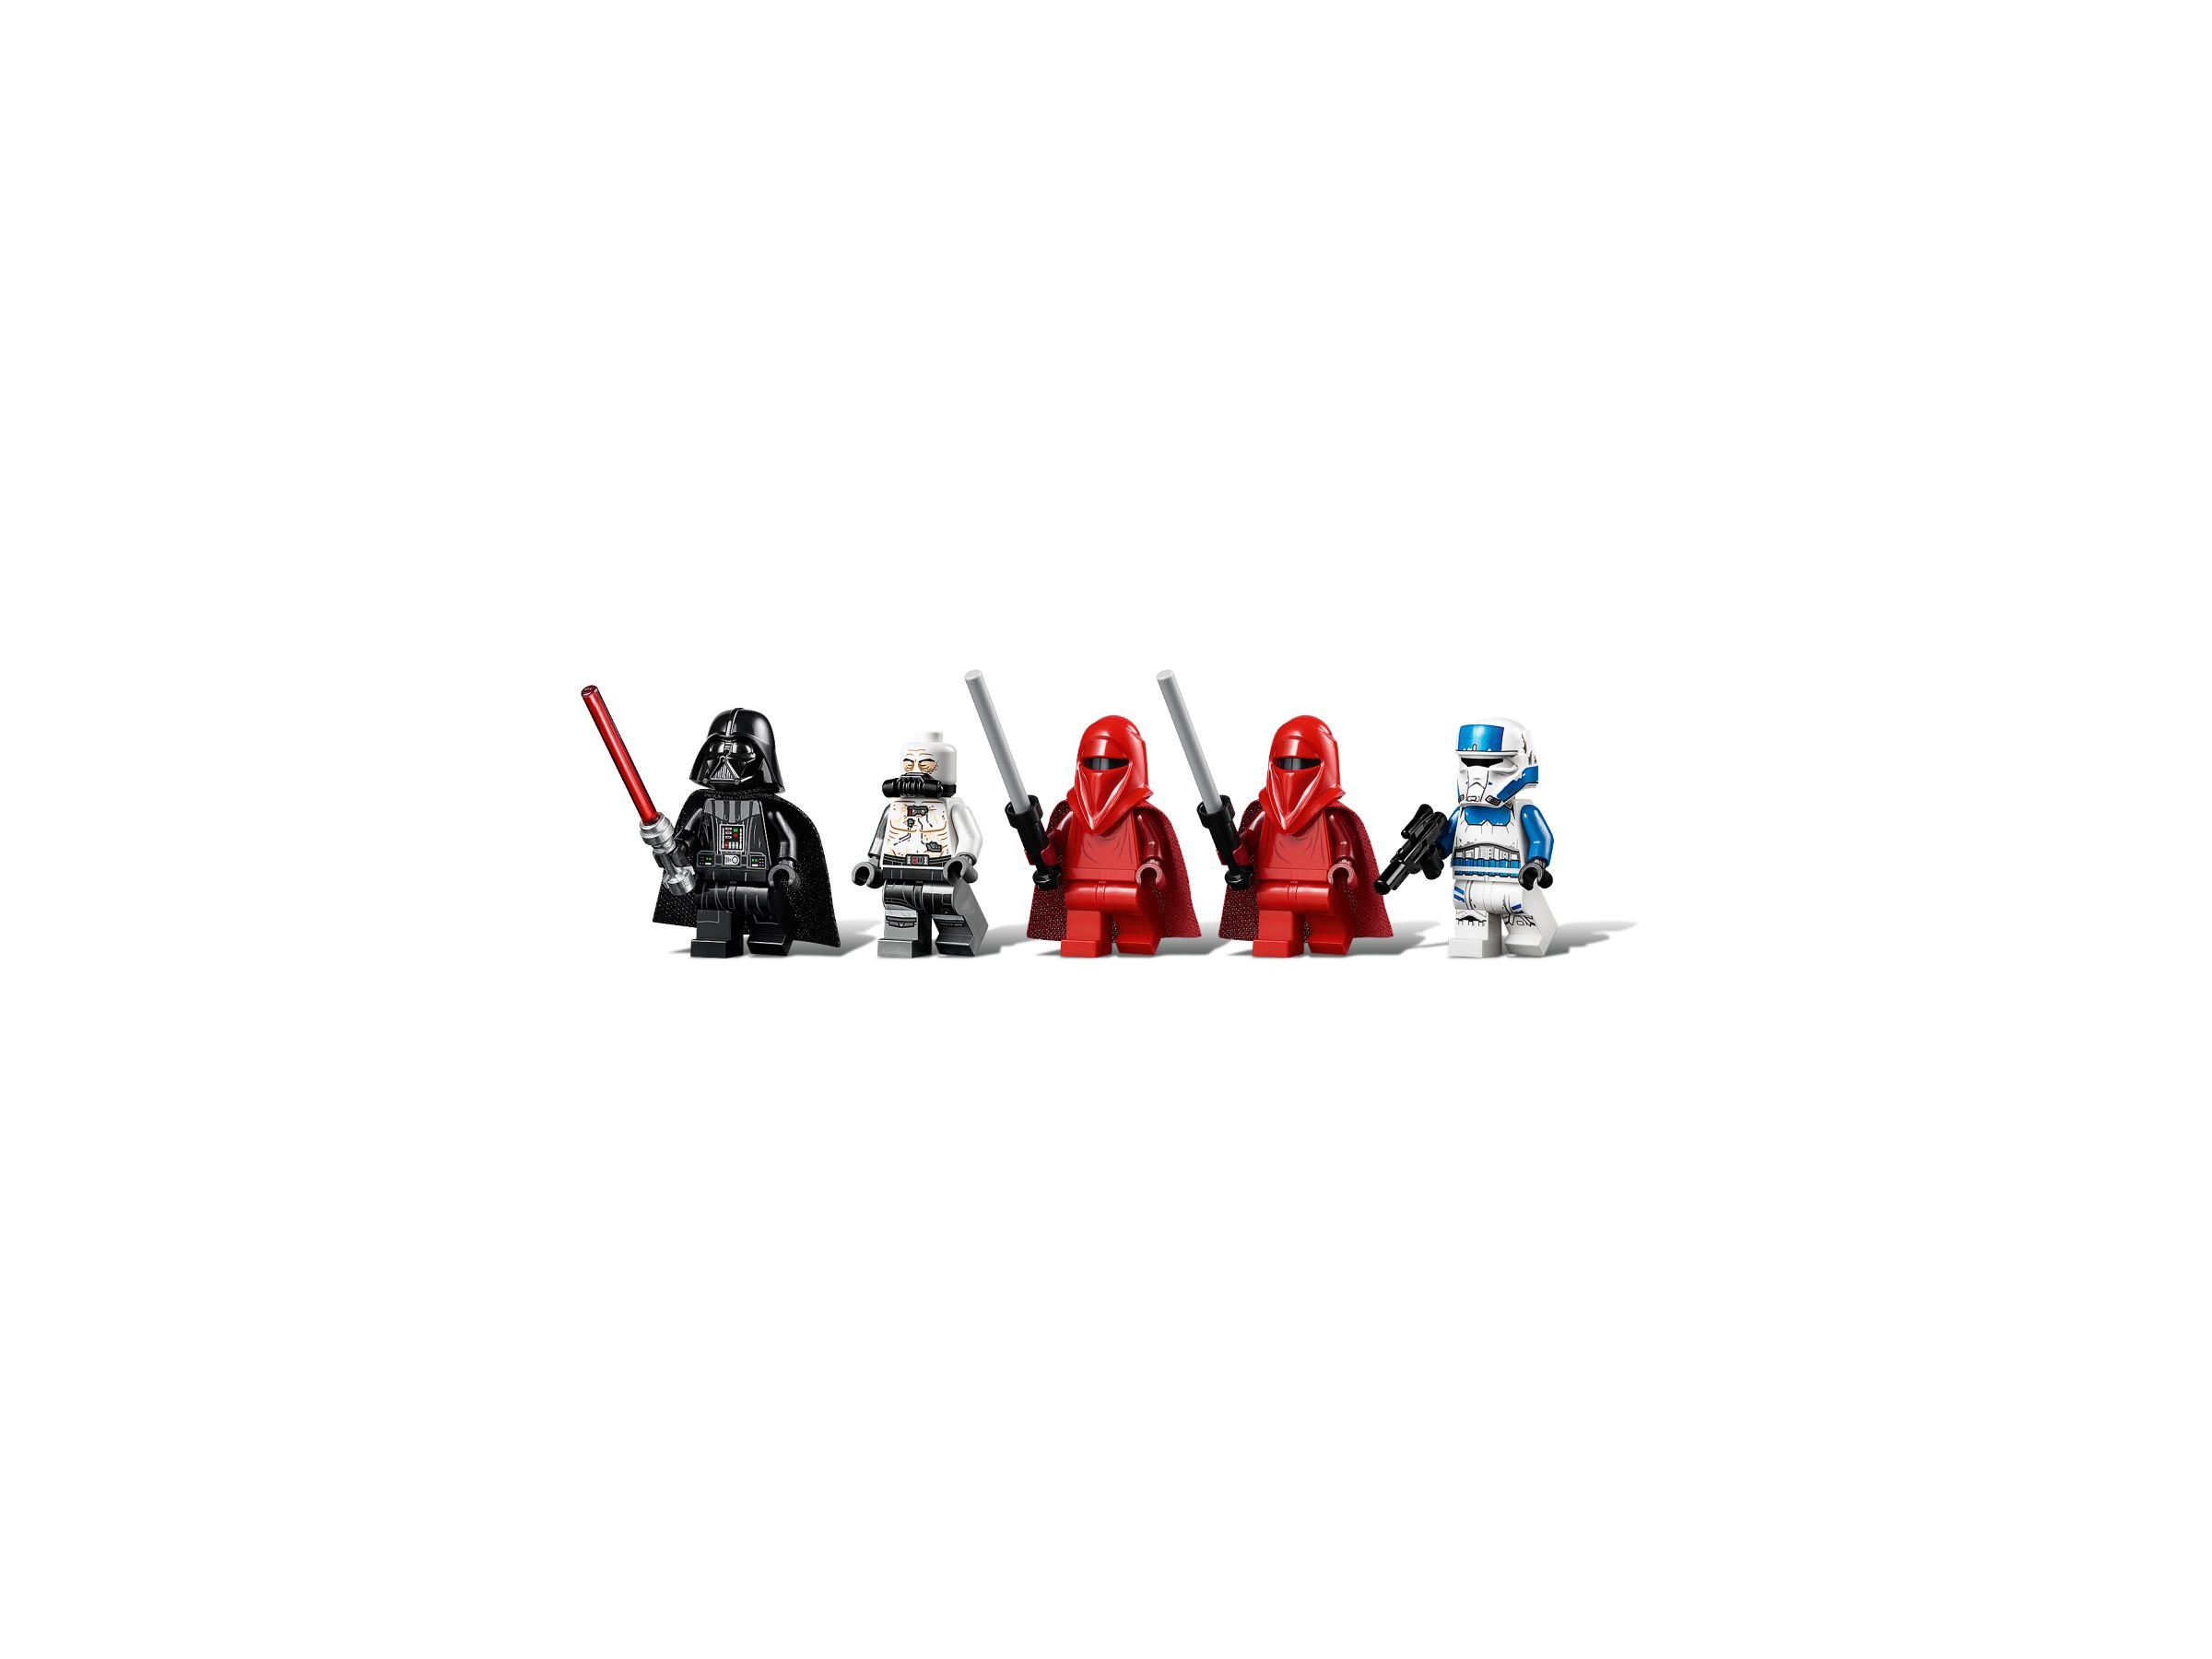 LEGO Star Wars 75251 Darth Vaders Festung LEGO_75251_alt6.jpg